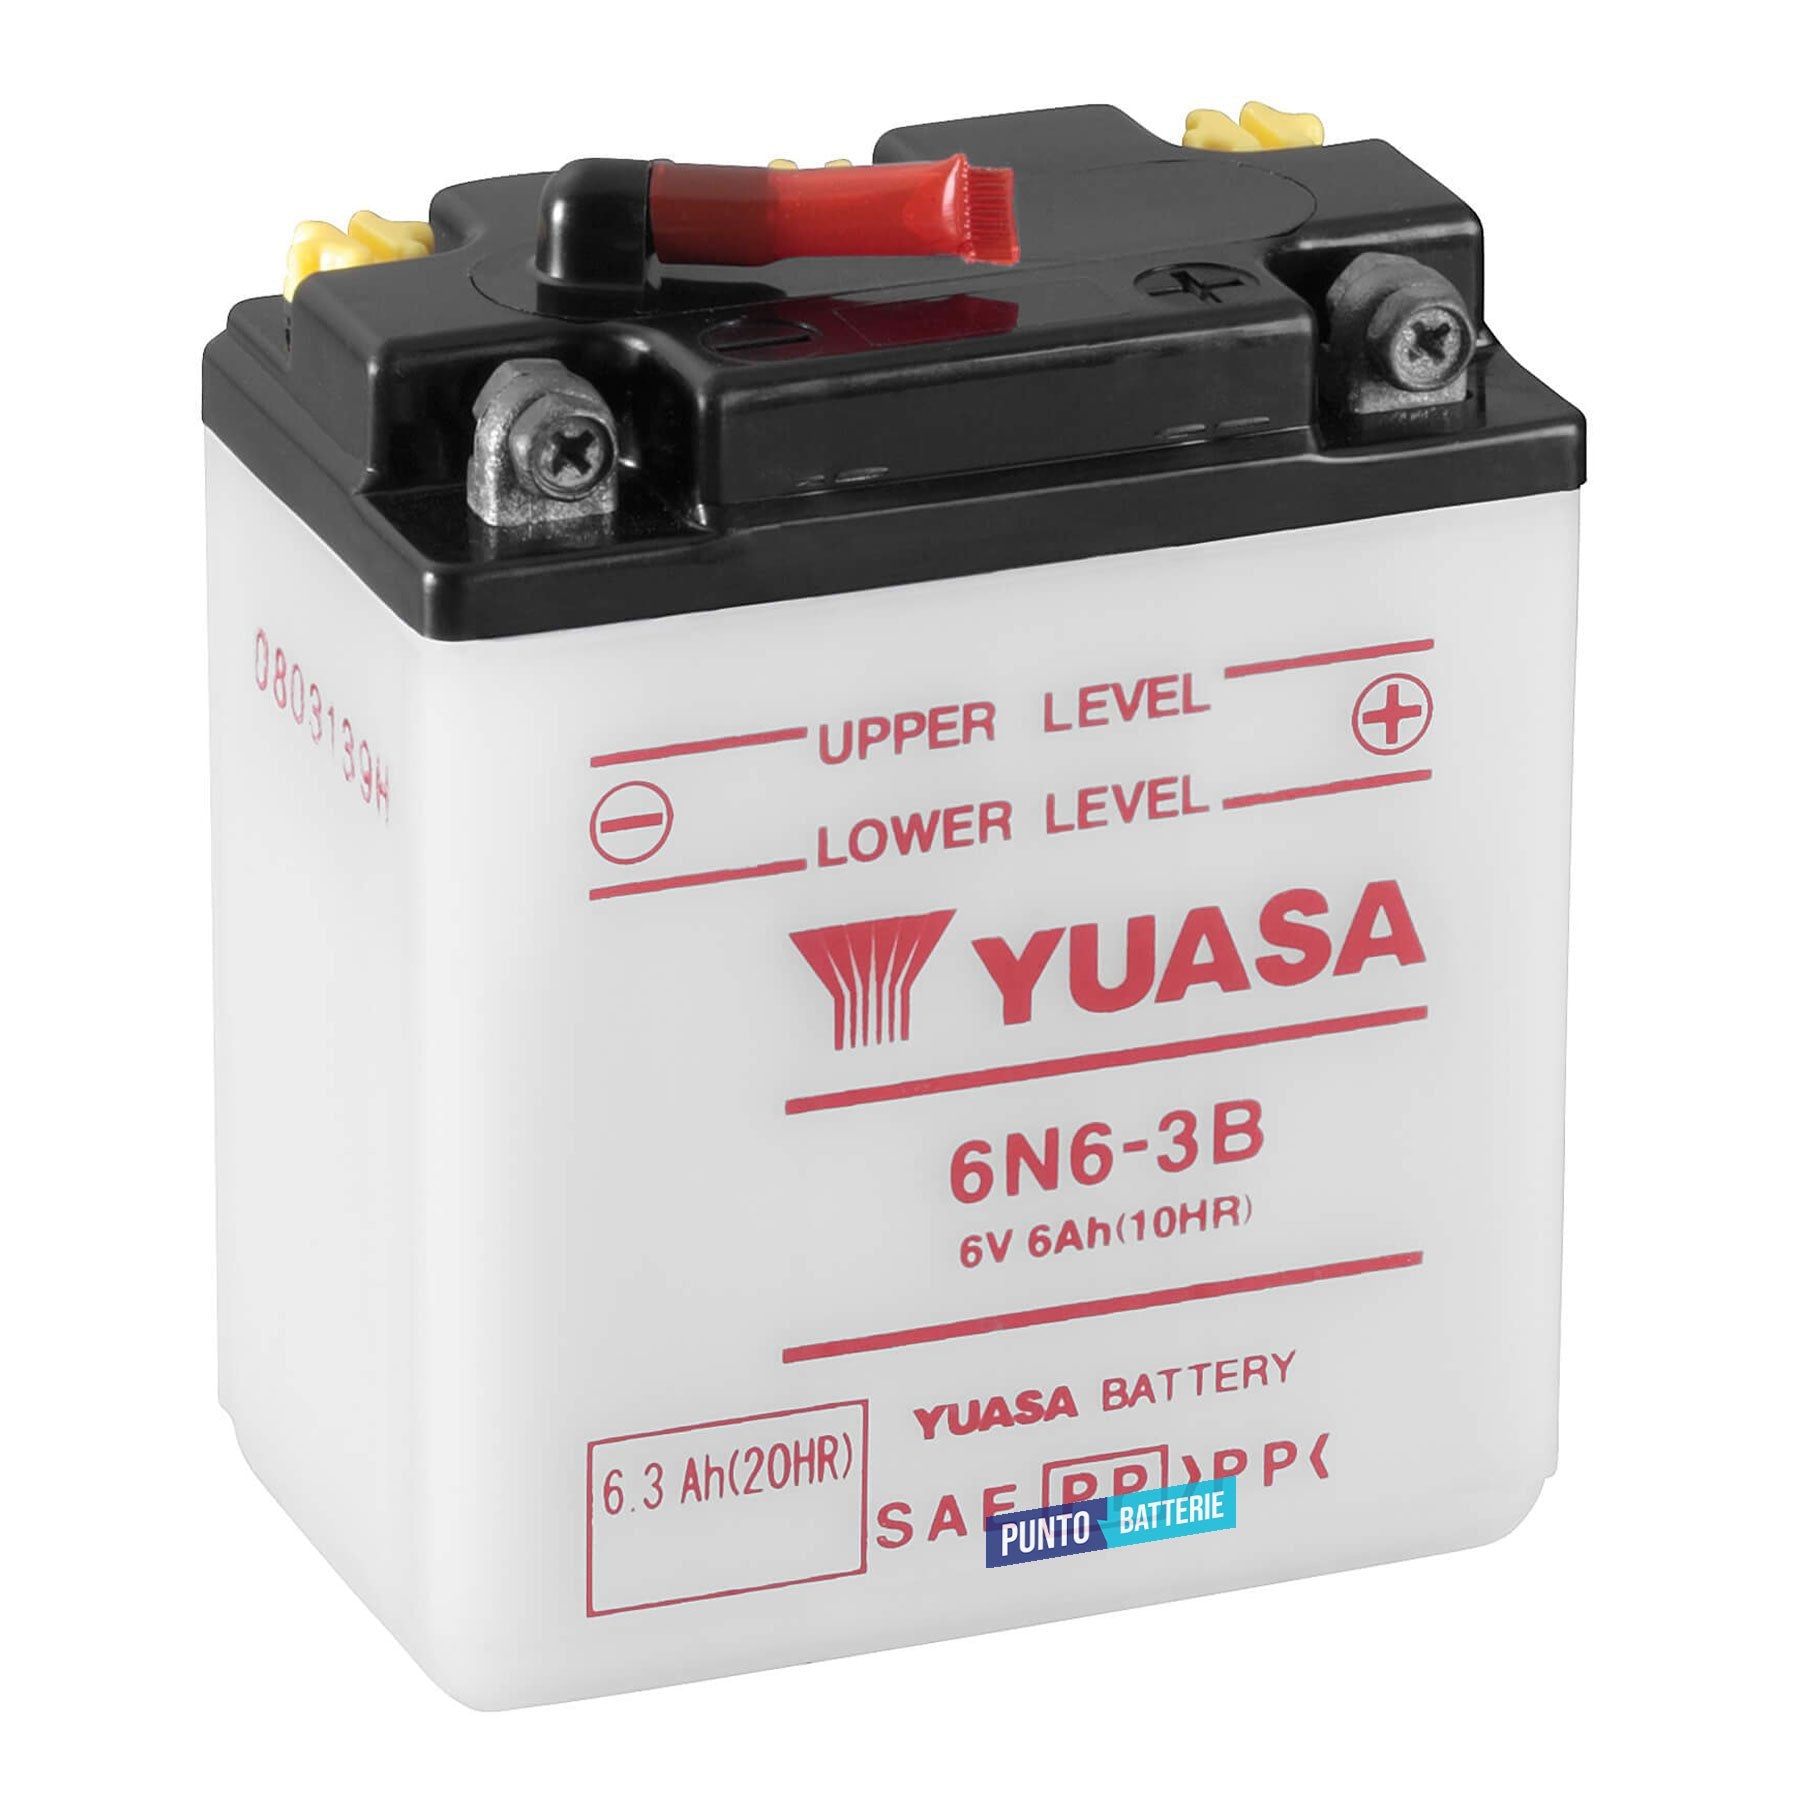 Batteria originale Yuasa Conventional 6N6-3B, dimensioni 99 x 57 x 111, polo positivo a destra, 6 volt, 6 amperora. Batteria per moto, scooter e powersport.